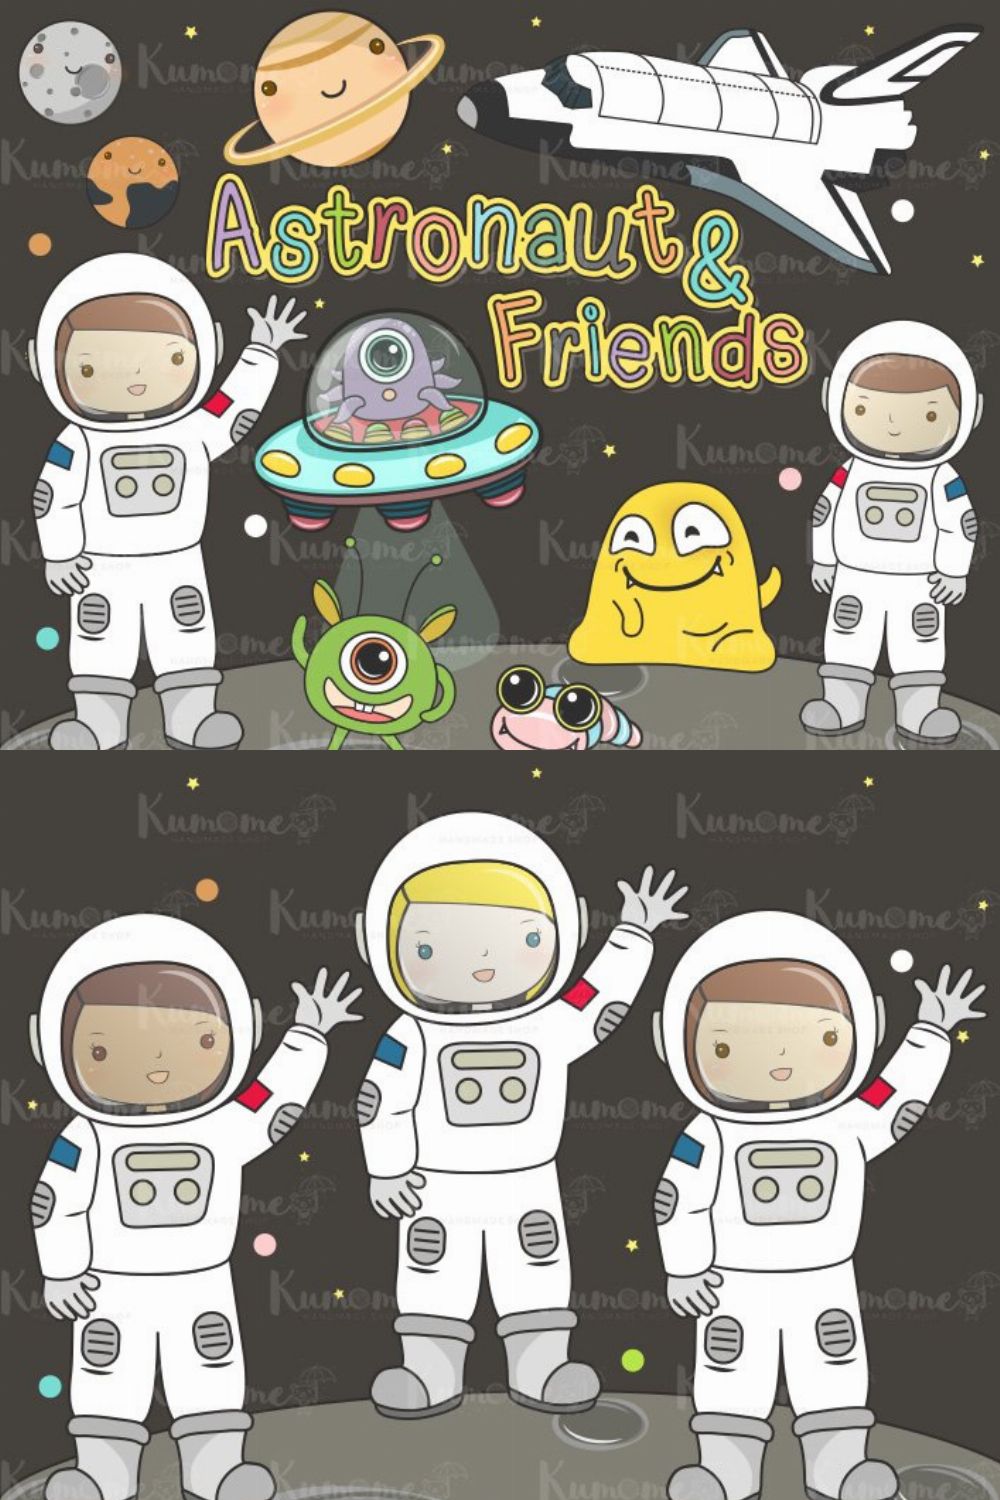 The Astronaut & Friends clipart set pinterest preview image.